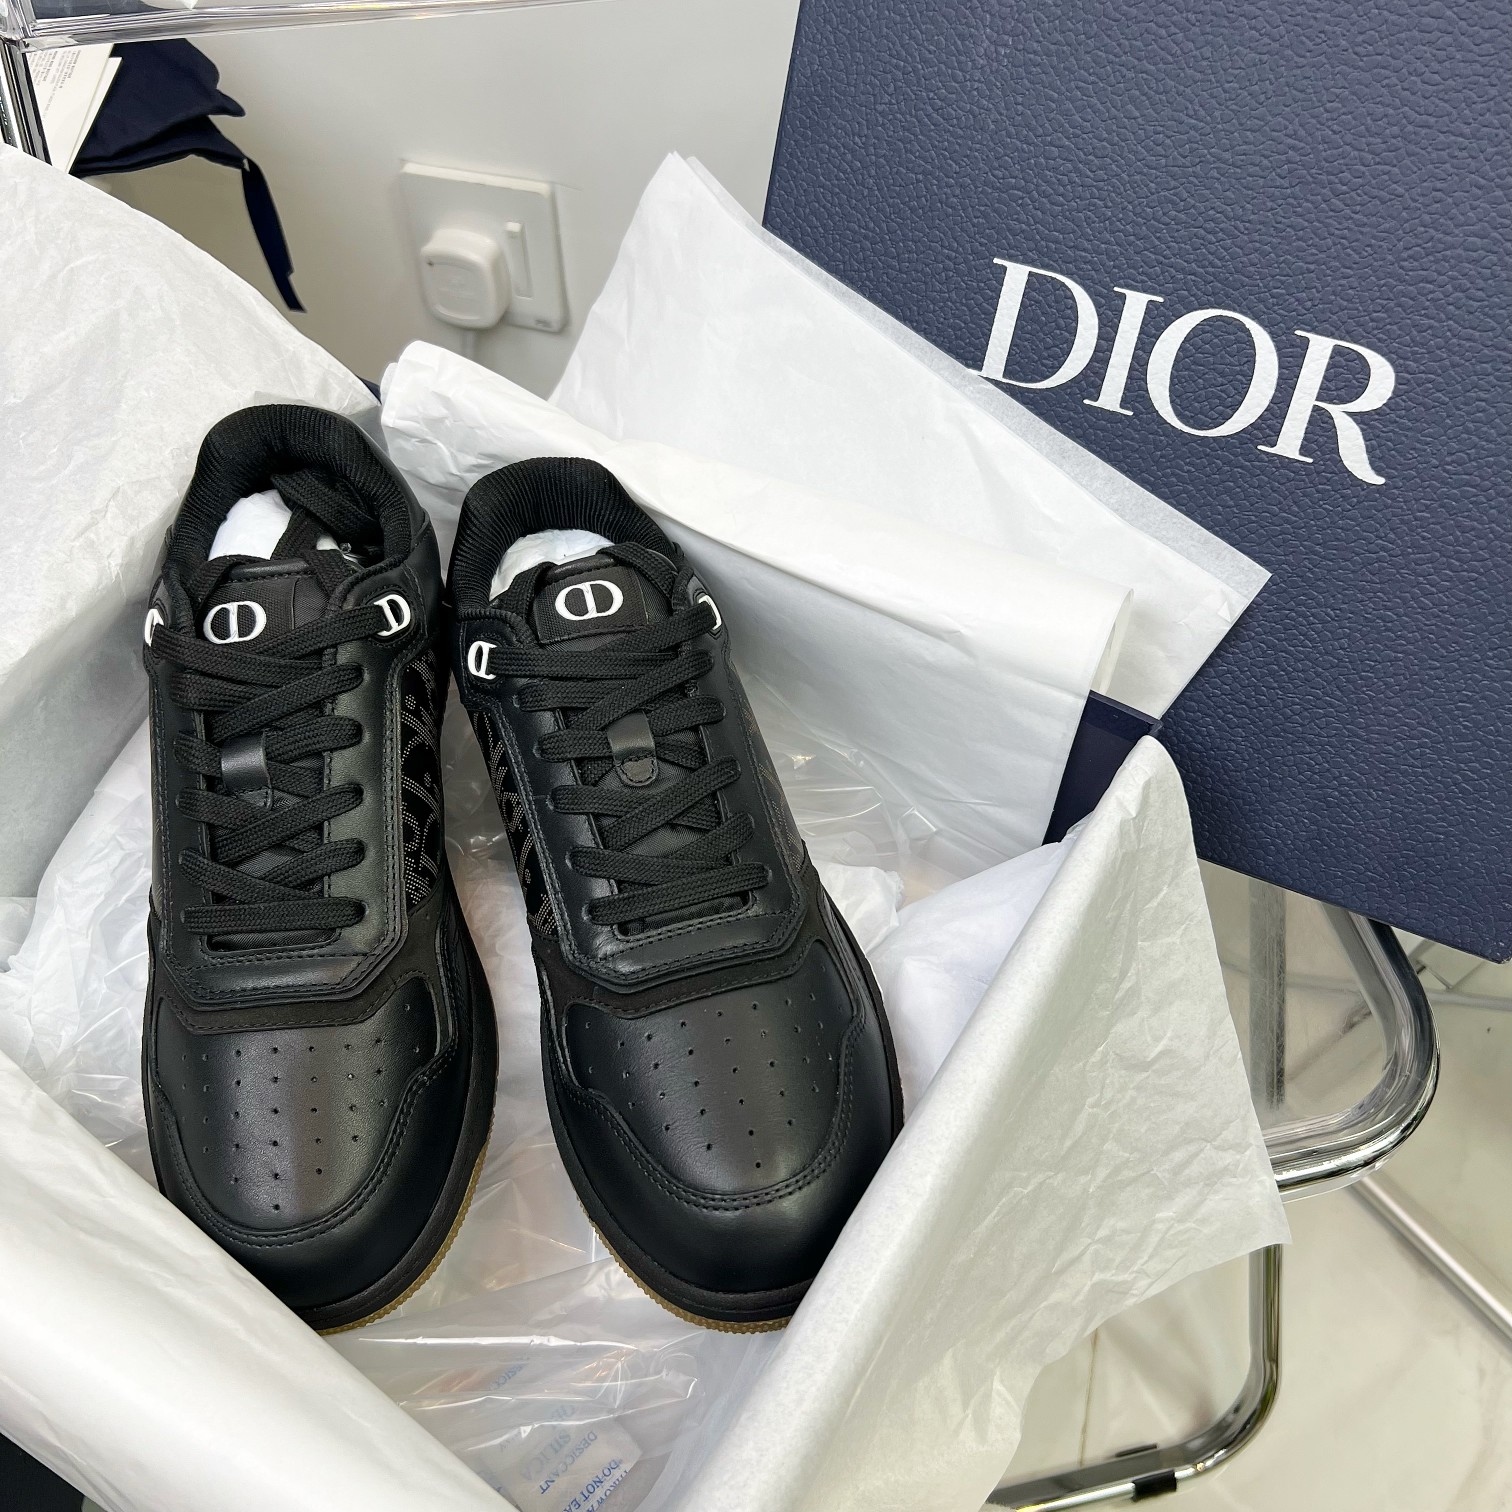 Dior 经典款板鞋2022全新配色全系列这款是经典款款了 原版就买了4双今年楦头和细节又做了升级 可以说是市面上顶级版本 鞋面是刺绣堪称迪奥的经典完全抗拒不了啊 香港购入原版 面料布料刺绣是发到台湾工厂定制的 来来回回确认色卡都是空运真的是费时又费力✅ 市面上几遍面料都不对版！仔细看我们的刺绣是有凹凸感的立体刺绣 皮料是意大利进口牛皮 完全与正品一致 最新原版包装盒配套 大底是原版TPU大底 ！！码数女35-41男38-46sydyyw 男码数➕20